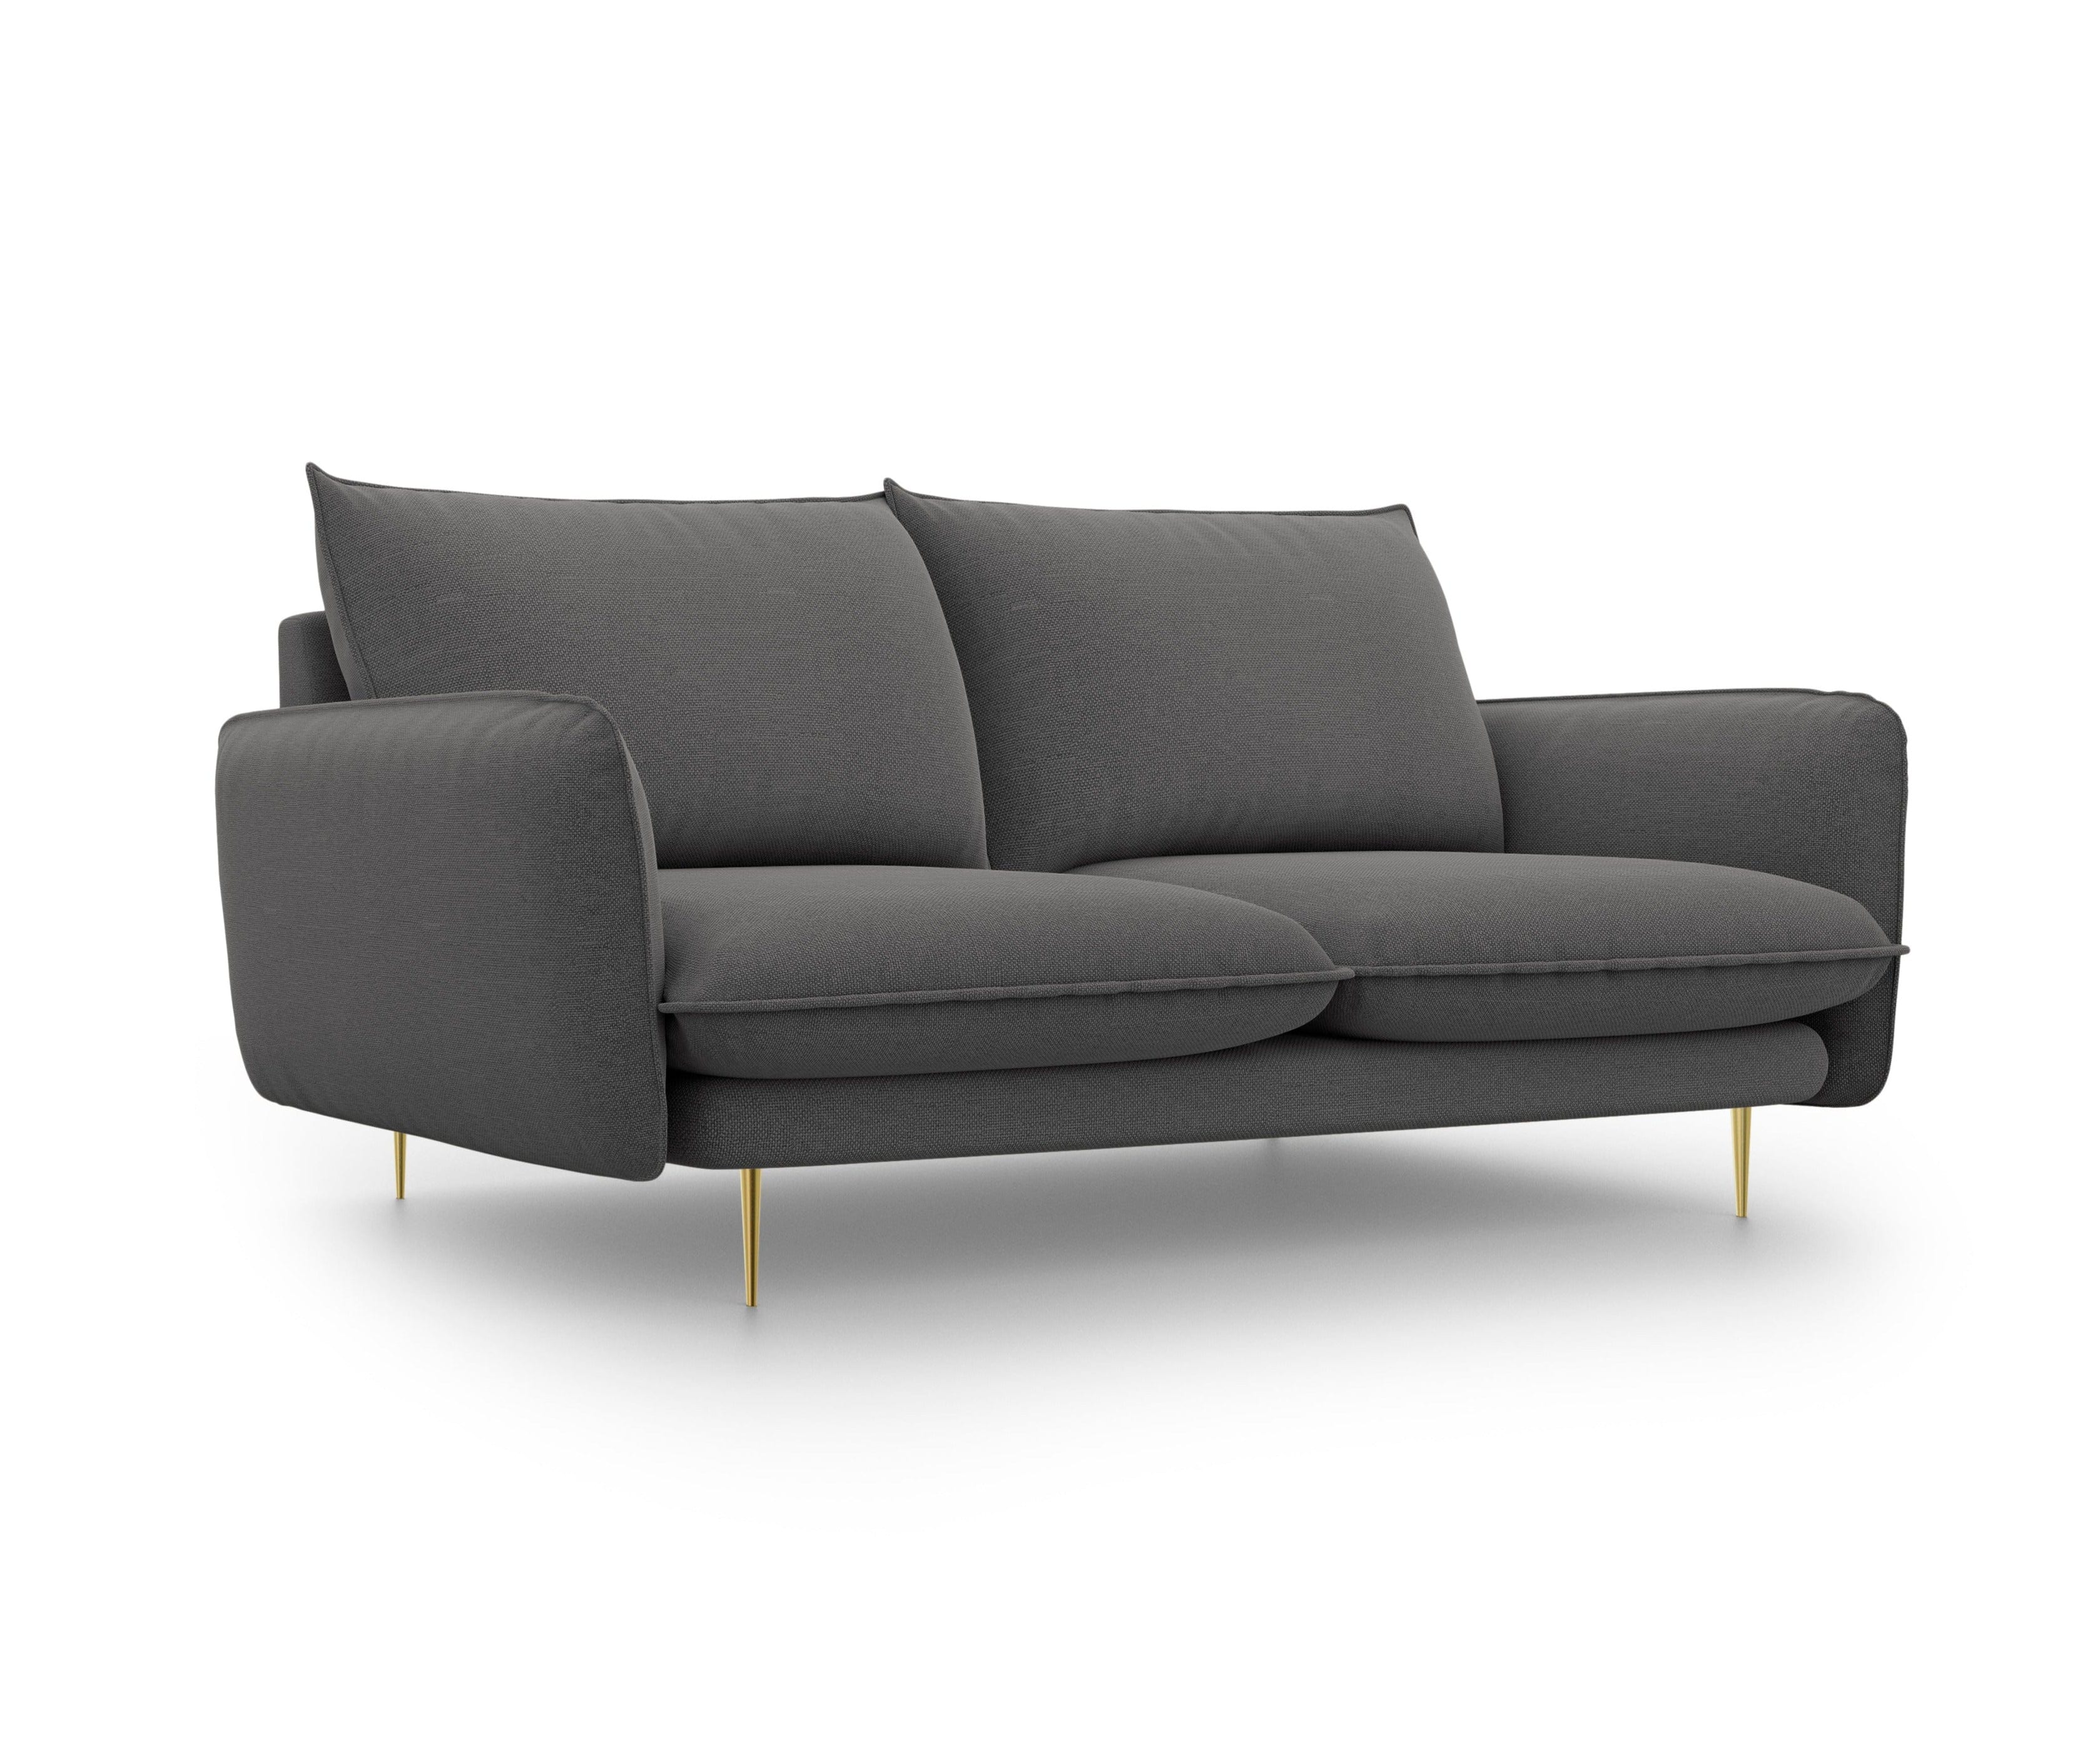 2-Sitzer-Sofa VIENNA dunkelgrau mit goldenem Untergestell